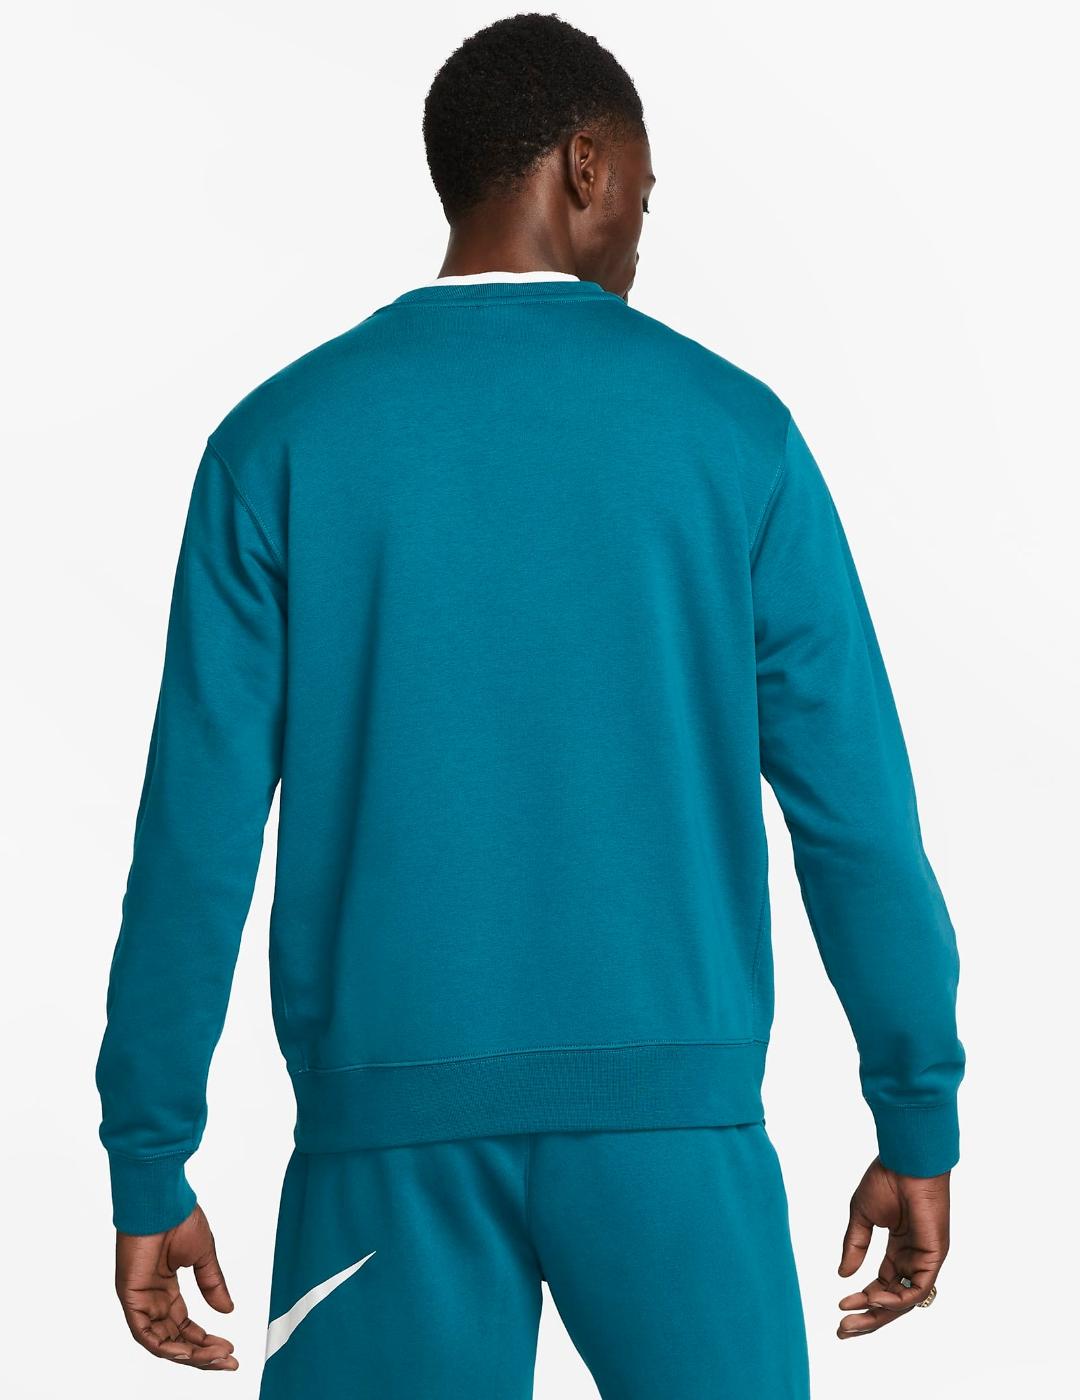 Sudadera Nike verde azulado para hombre